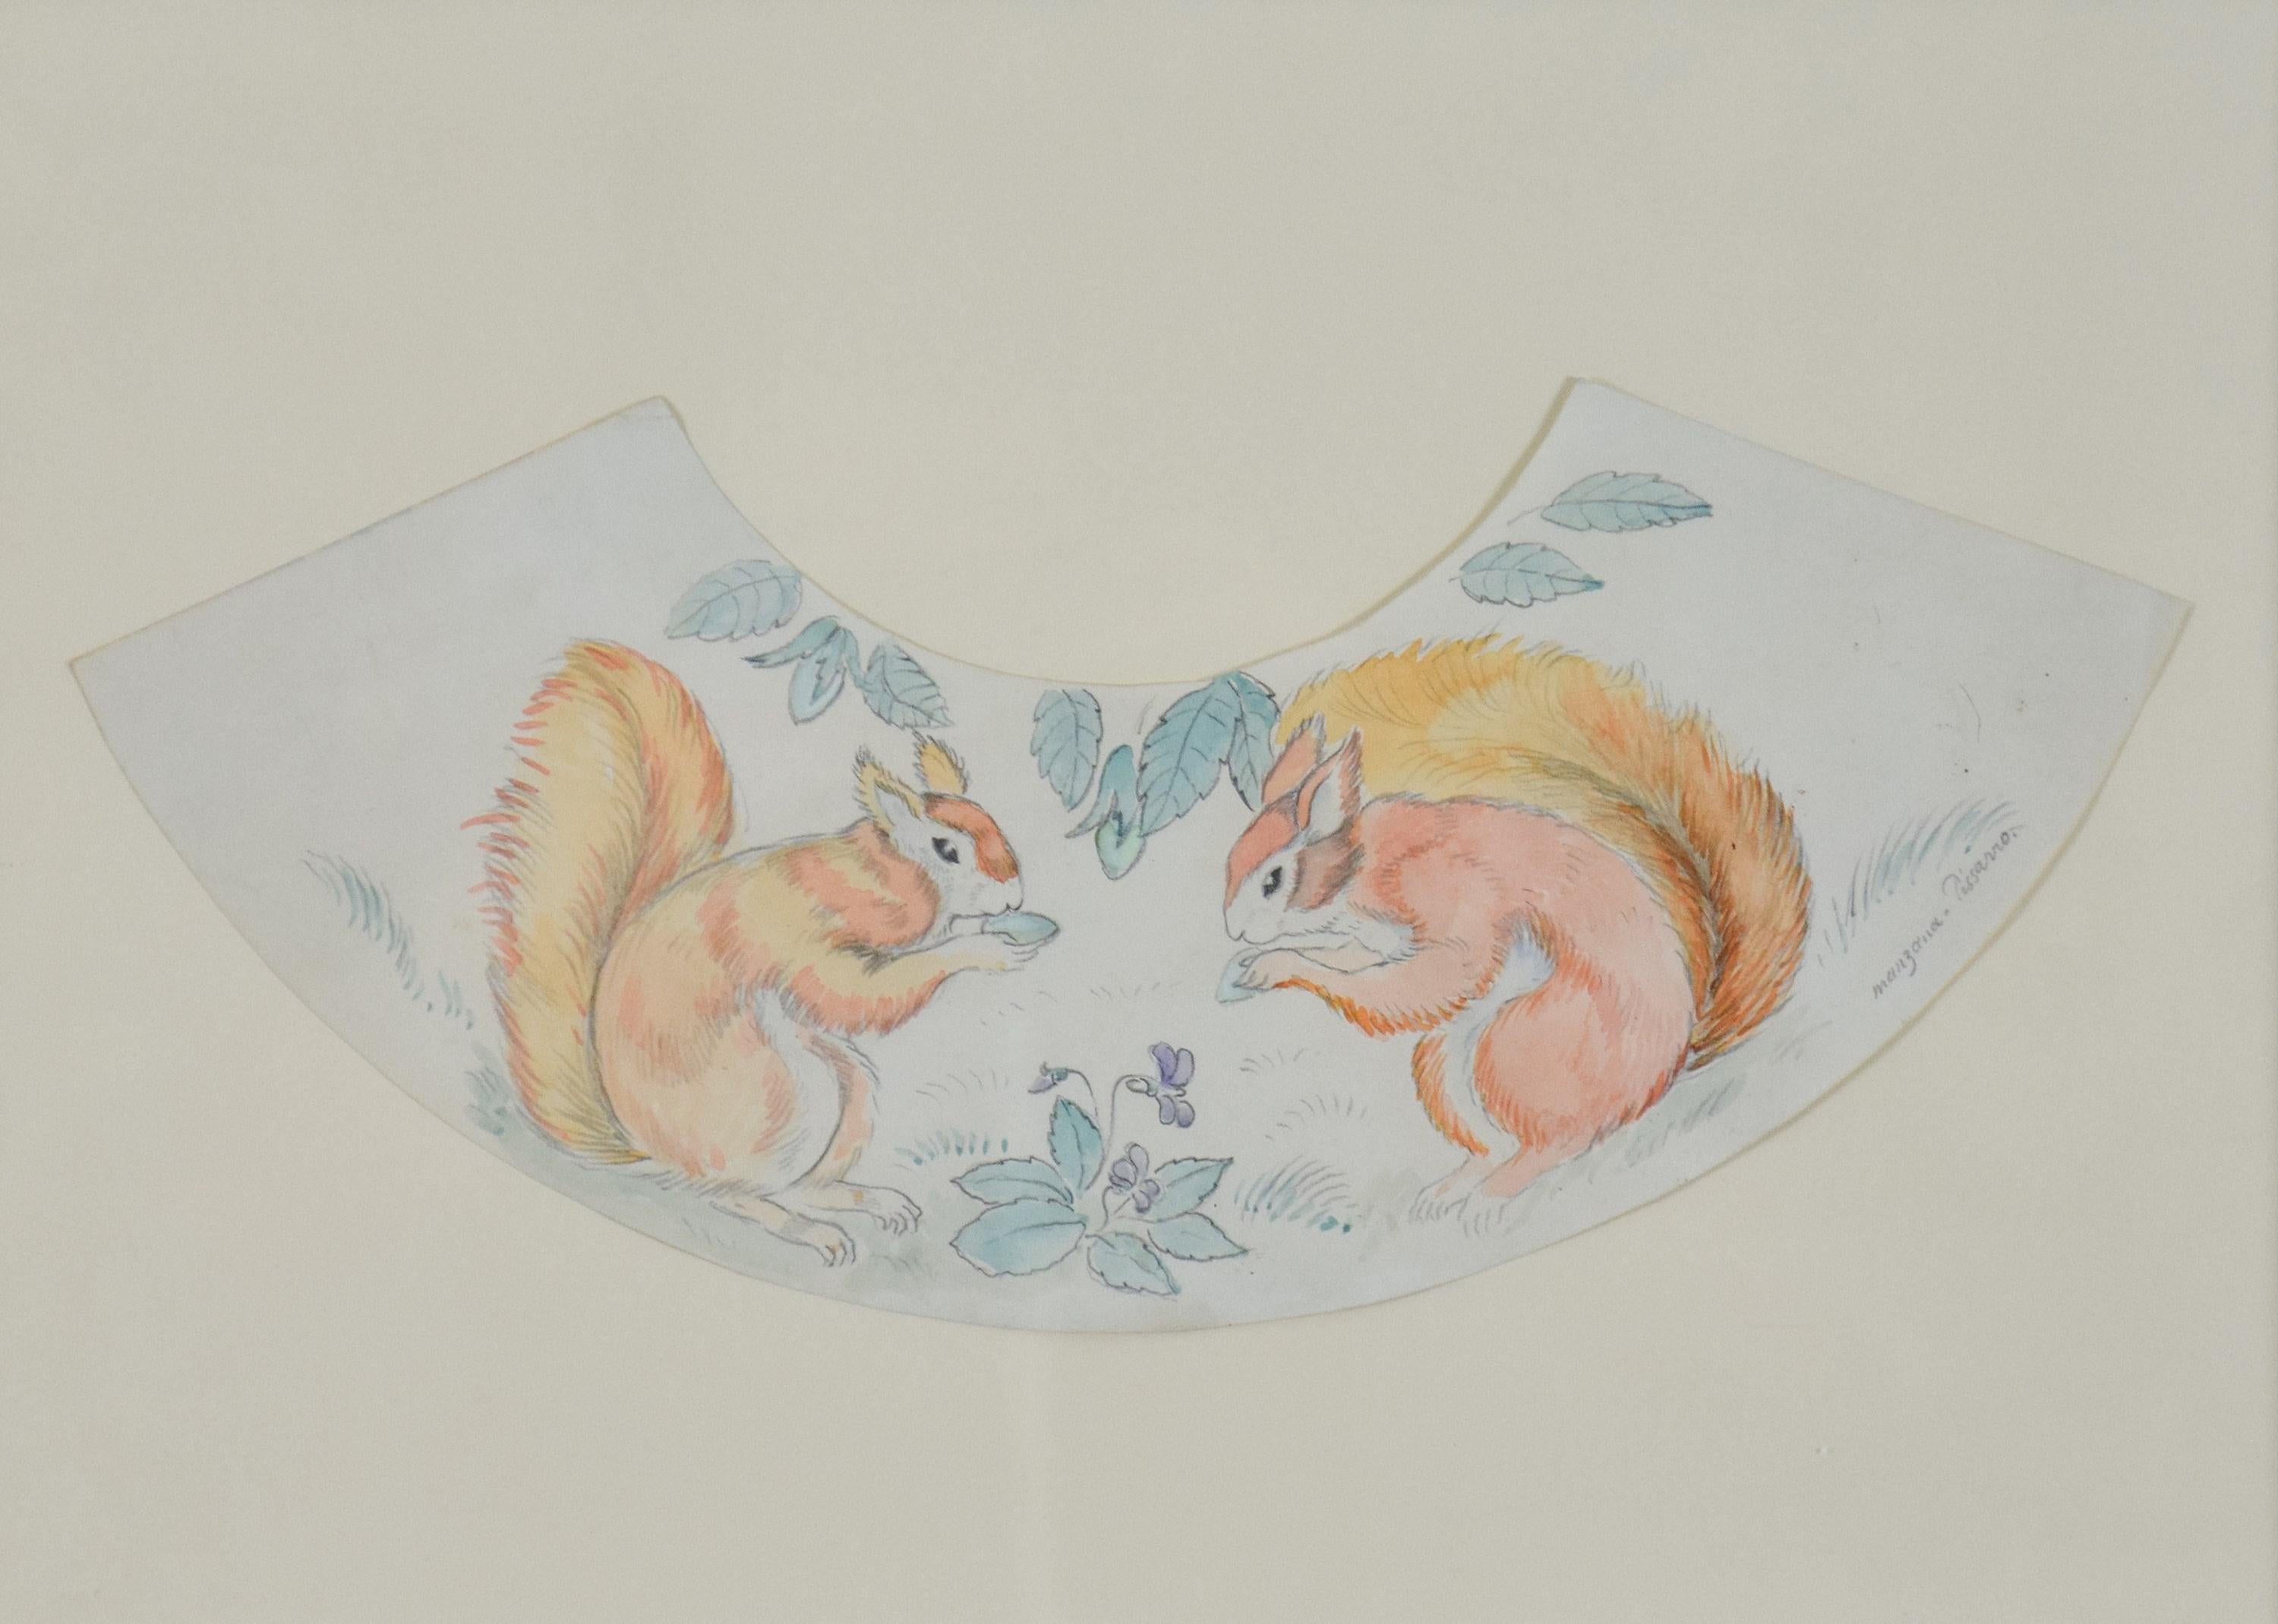 Decorative Squirrel Design, Pencil and Watercolour on Paper